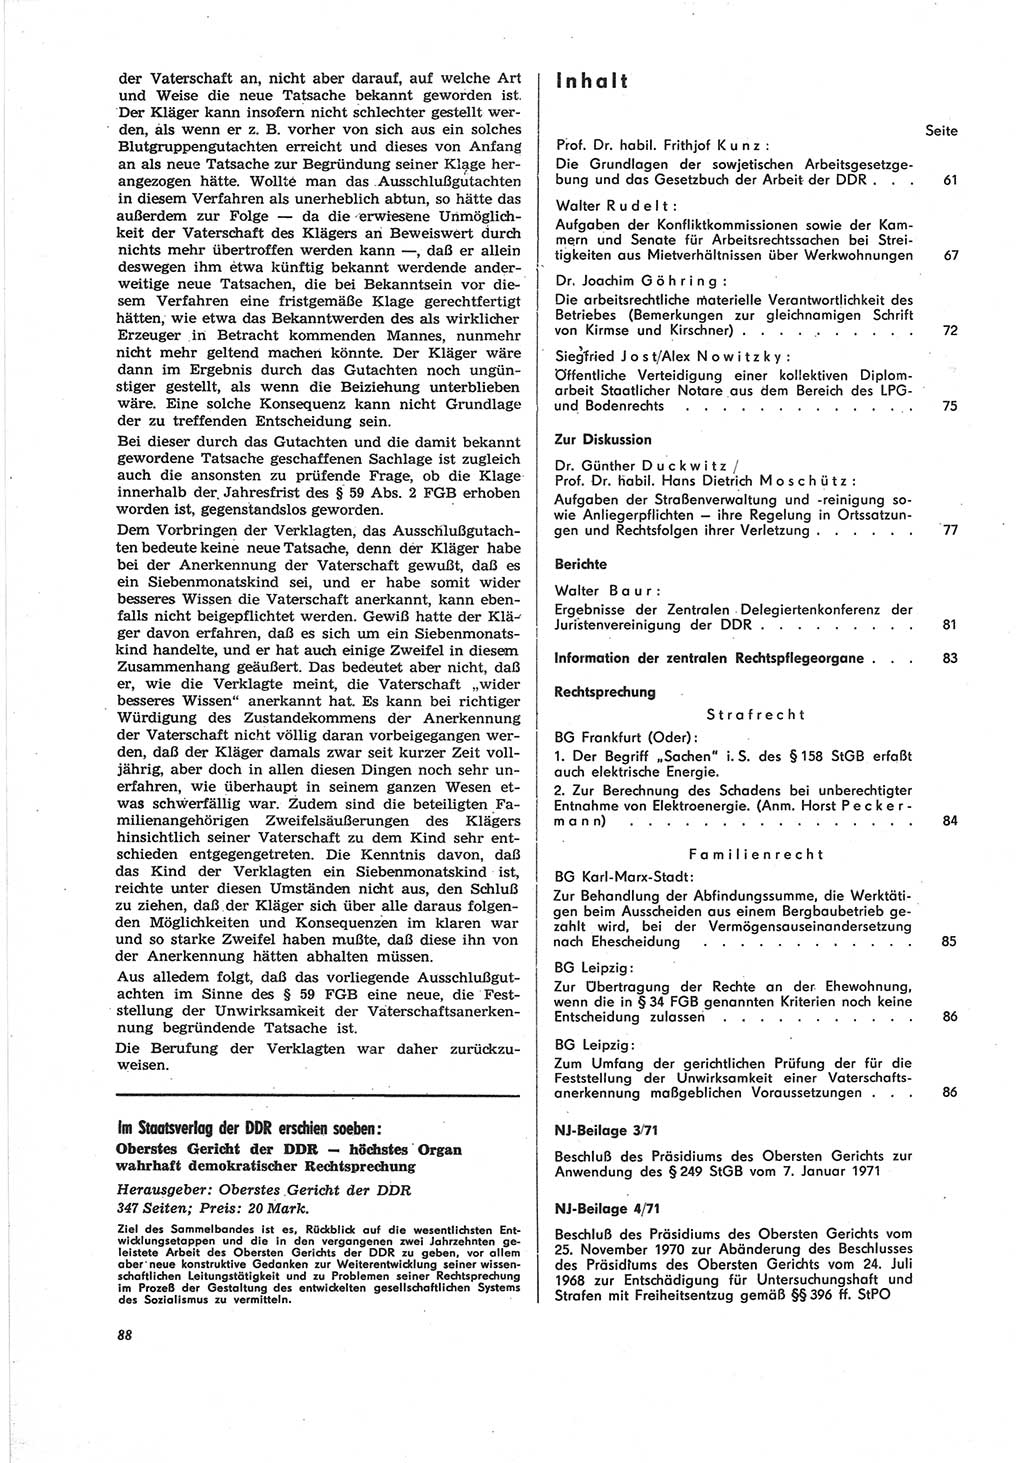 Neue Justiz (NJ), Zeitschrift für Recht und Rechtswissenschaft [Deutsche Demokratische Republik (DDR)], 25. Jahrgang 1971, Seite 88 (NJ DDR 1971, S. 88)